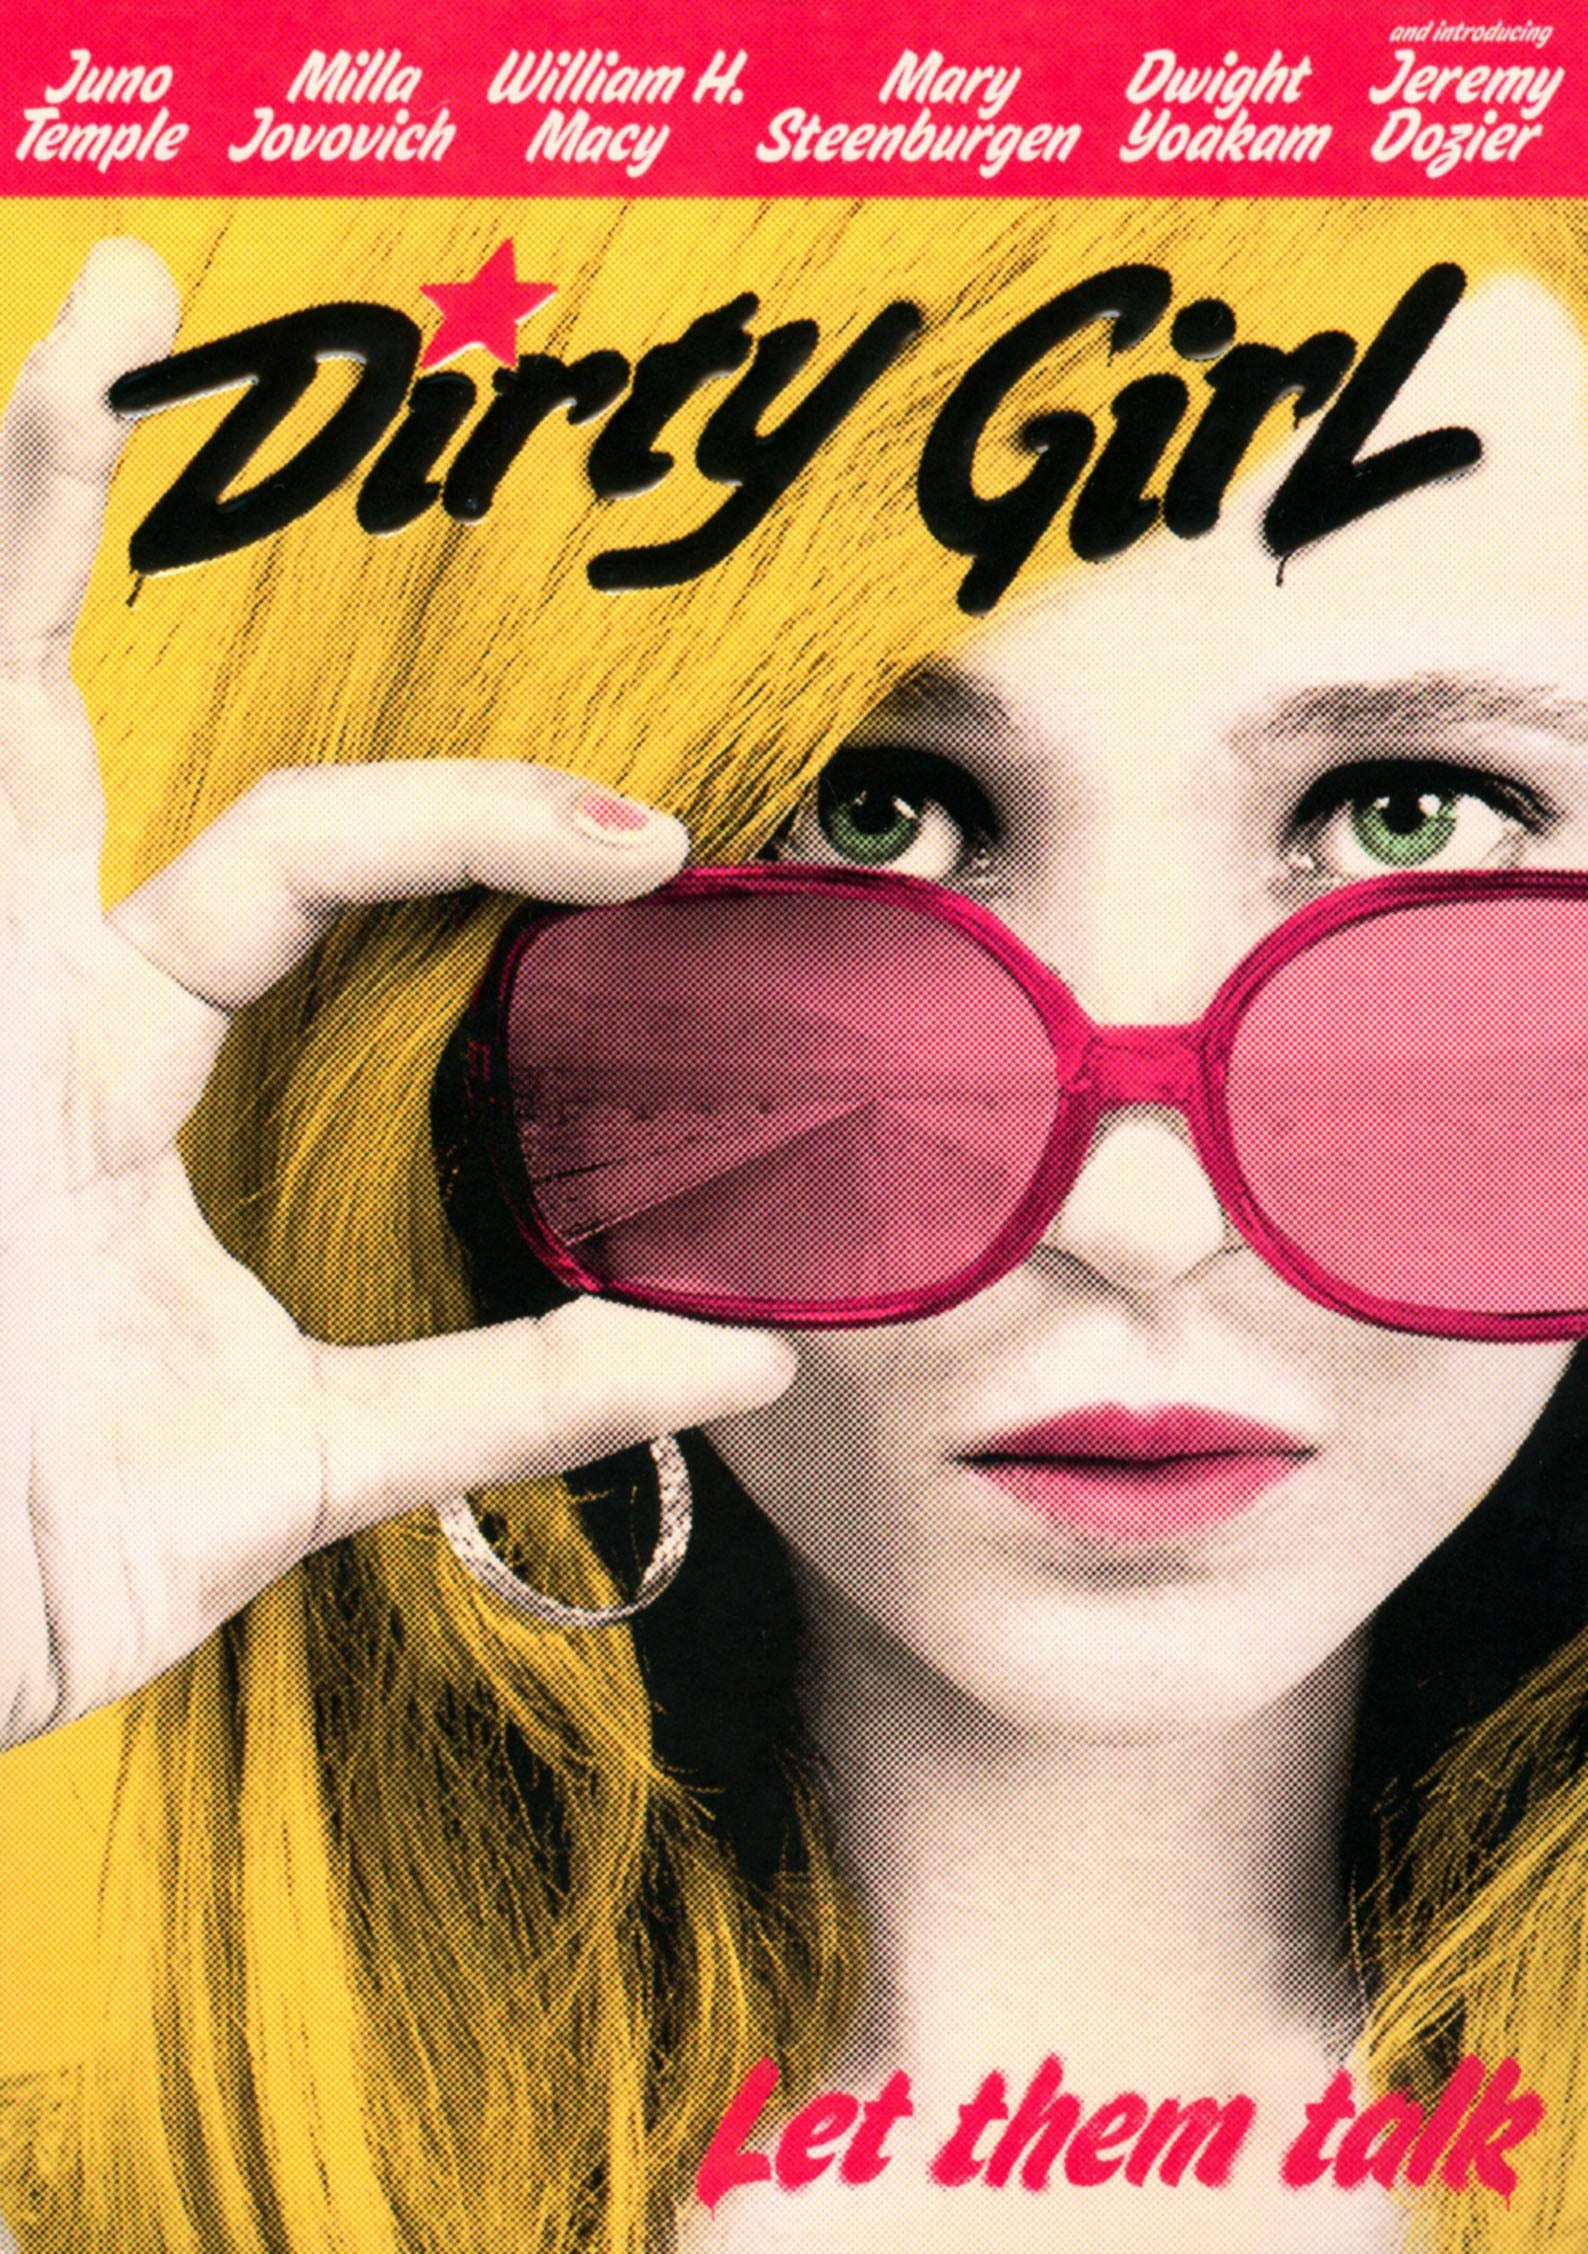 Dirty Girl cover art